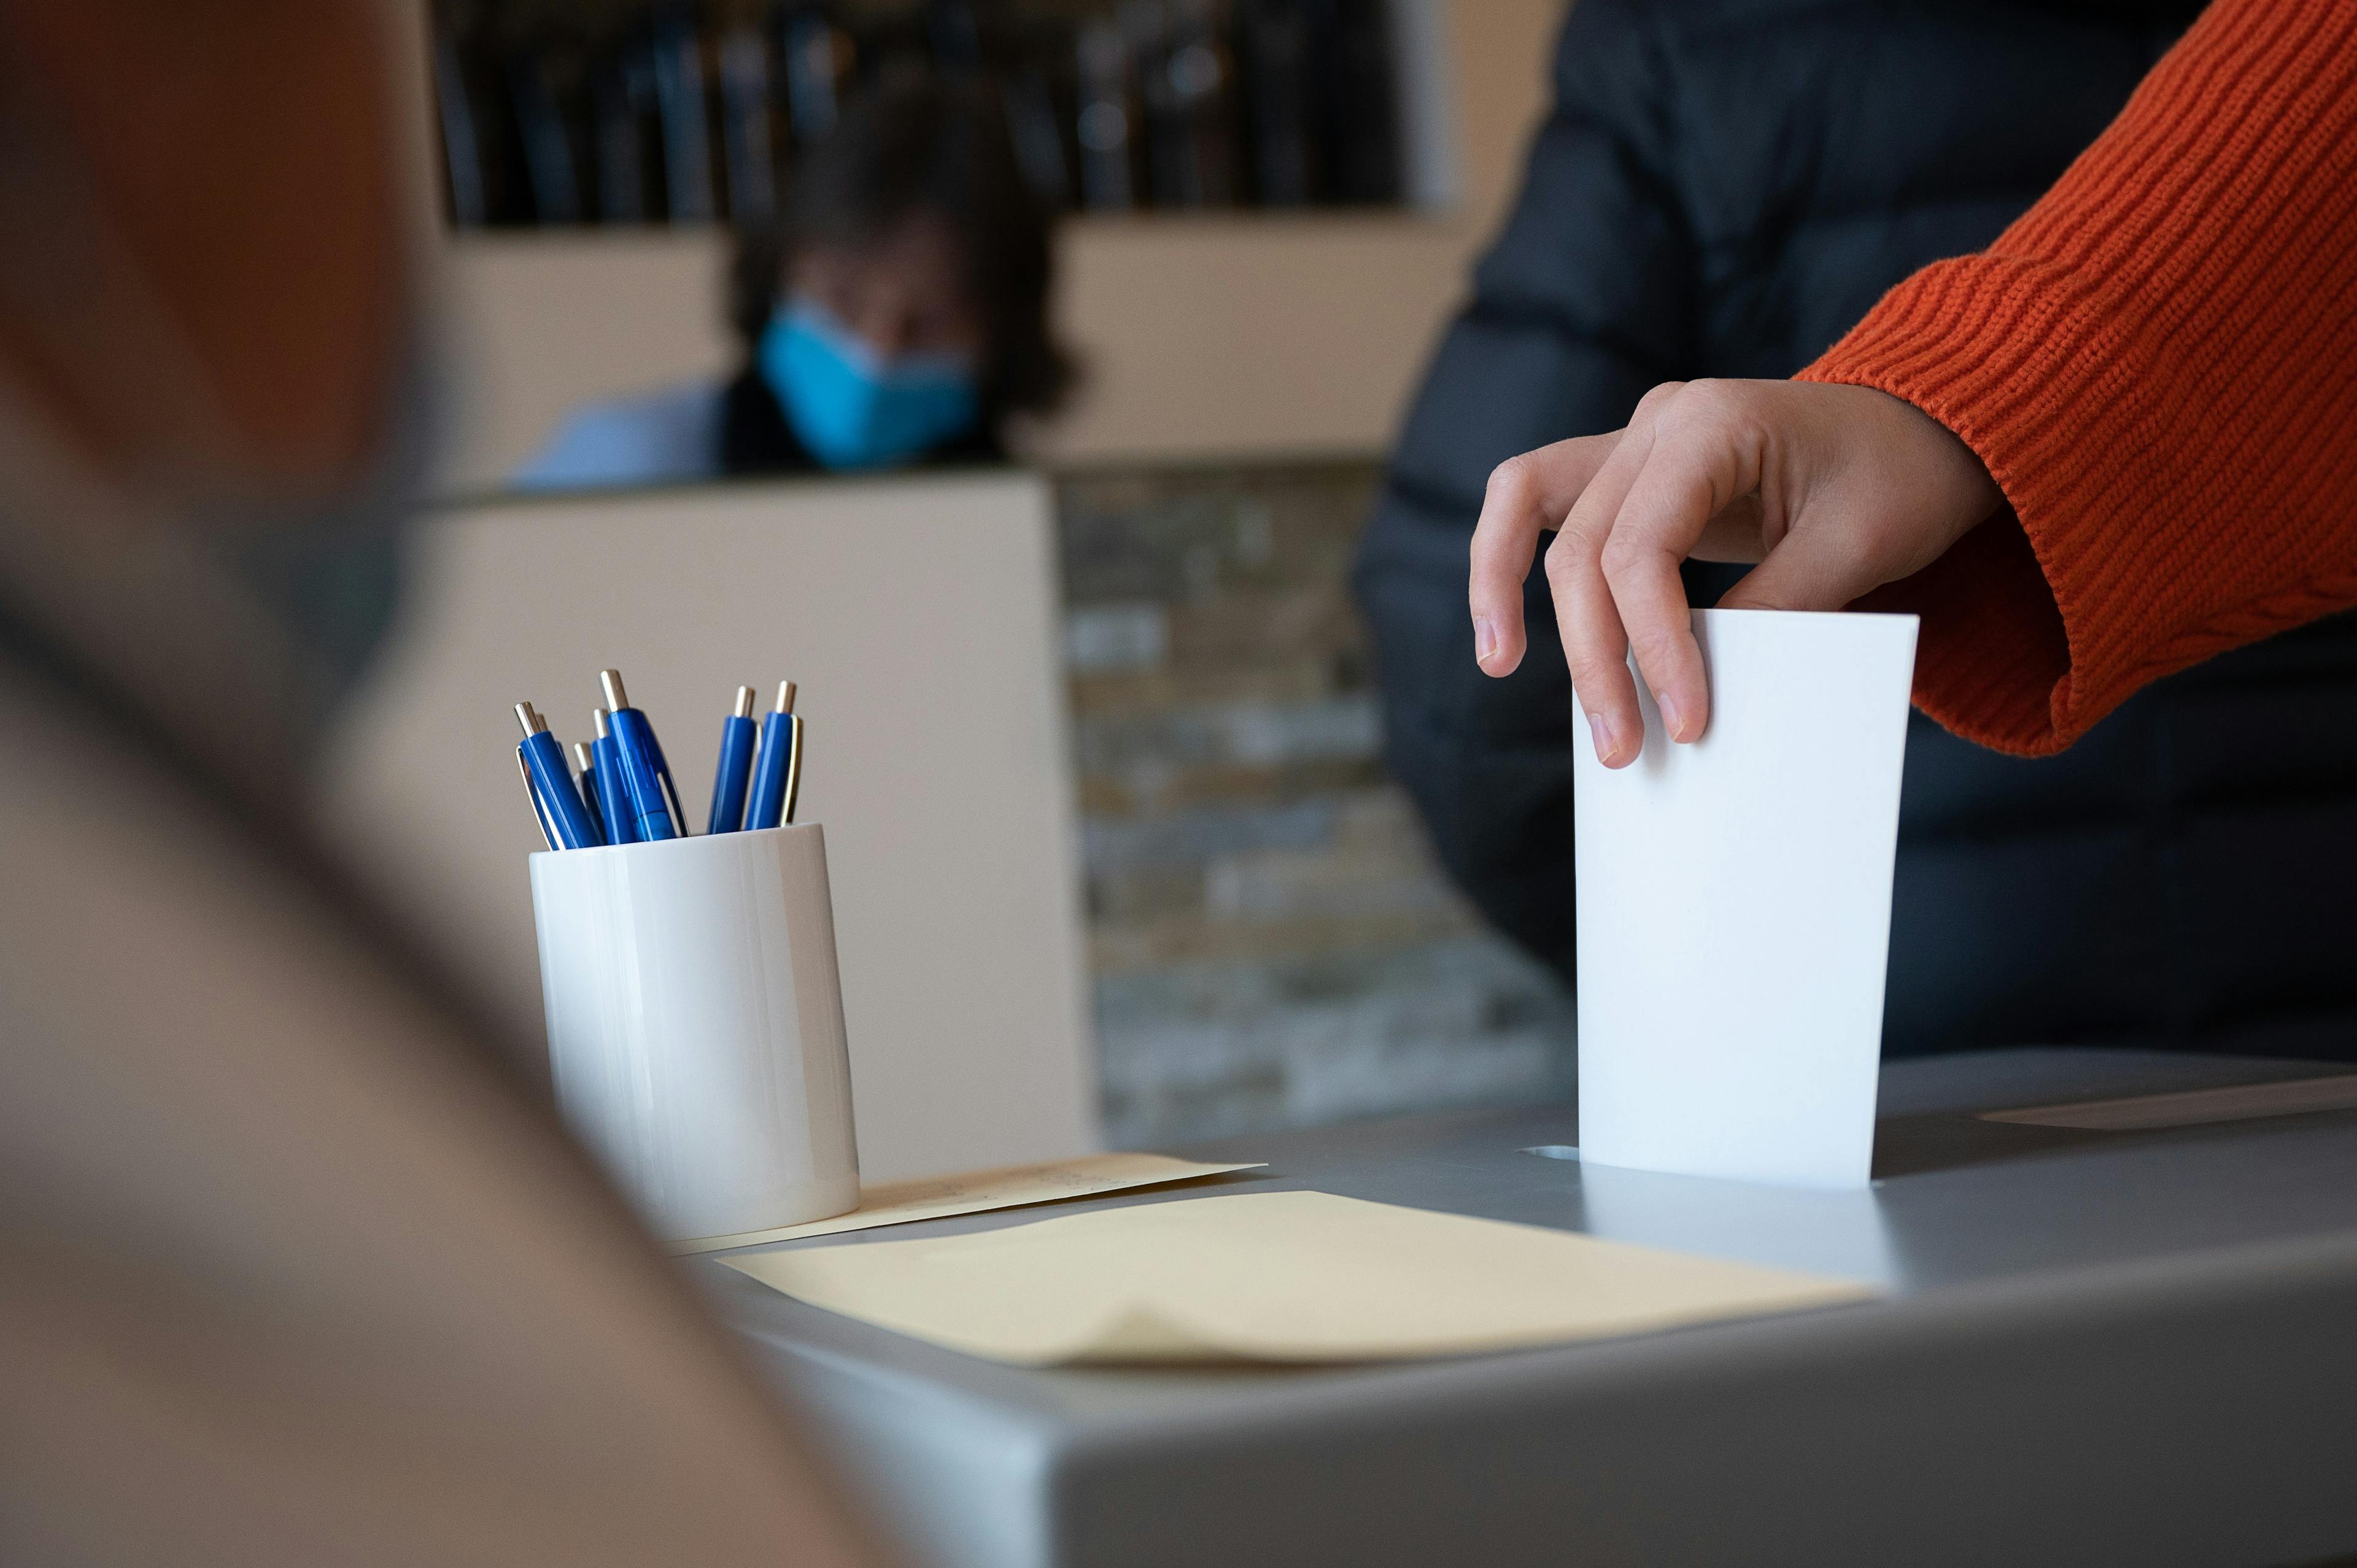 Man sieht eine Wahlurne, in die gerade von einer Person mit rotem Pulli ein Zettel eingeworfen wird.